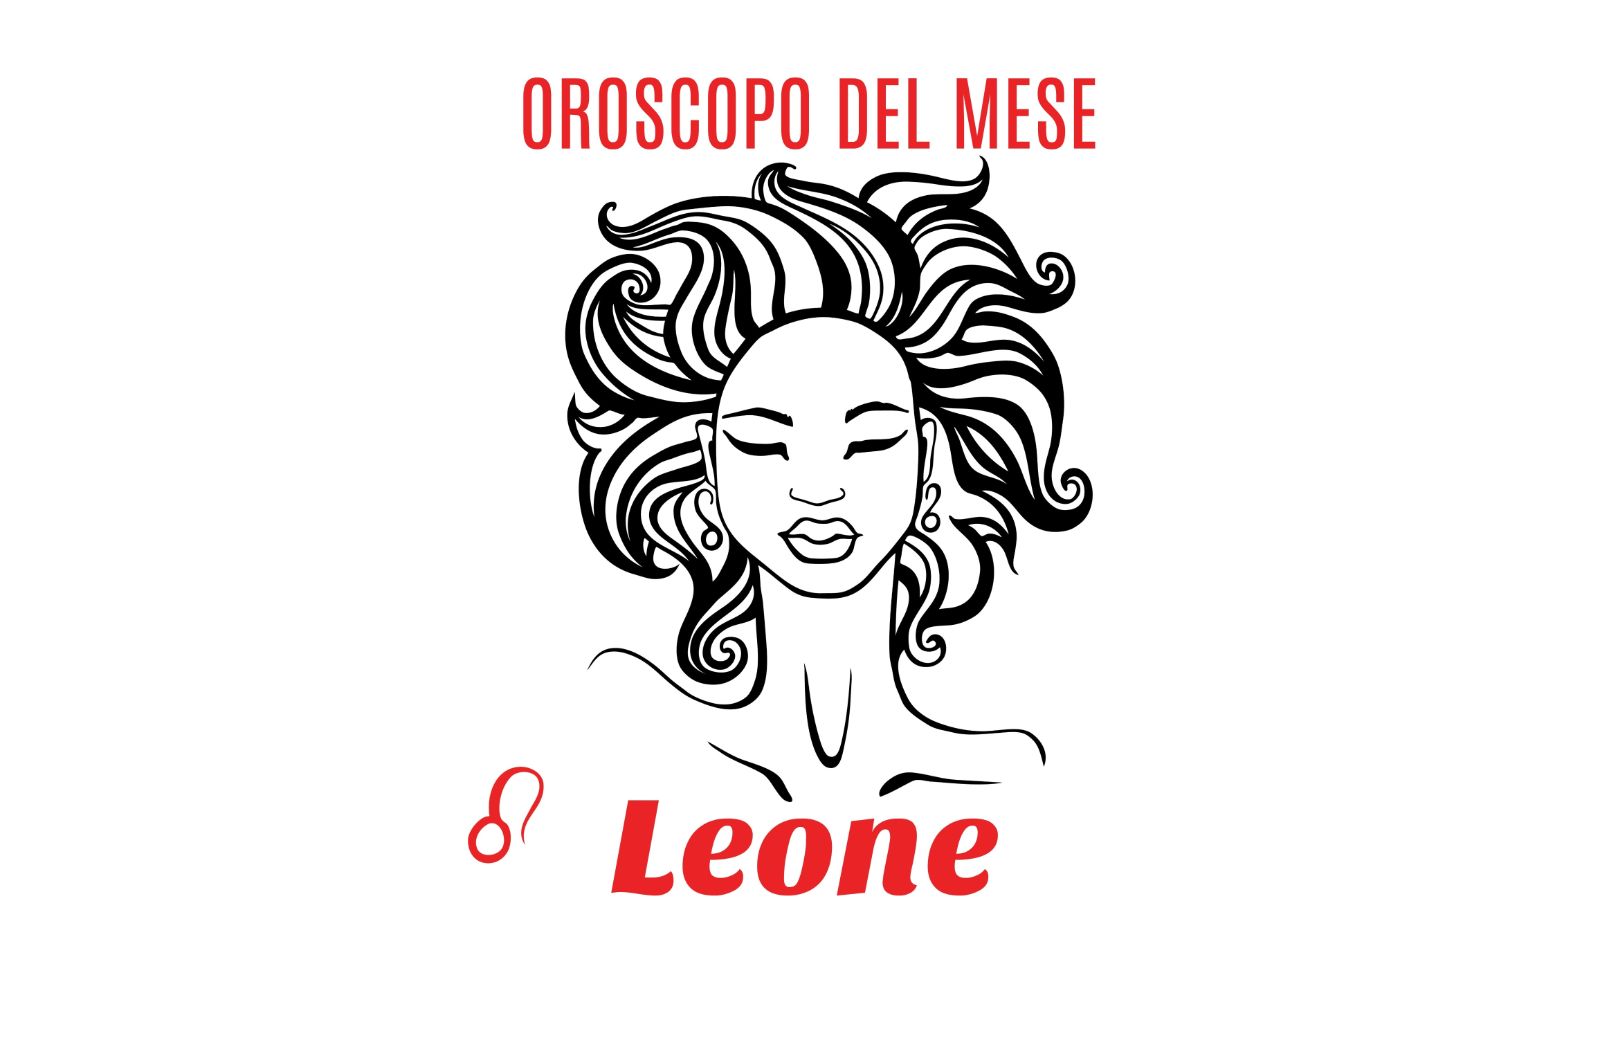 Oroscopo del mese: Leone - settembre 2018